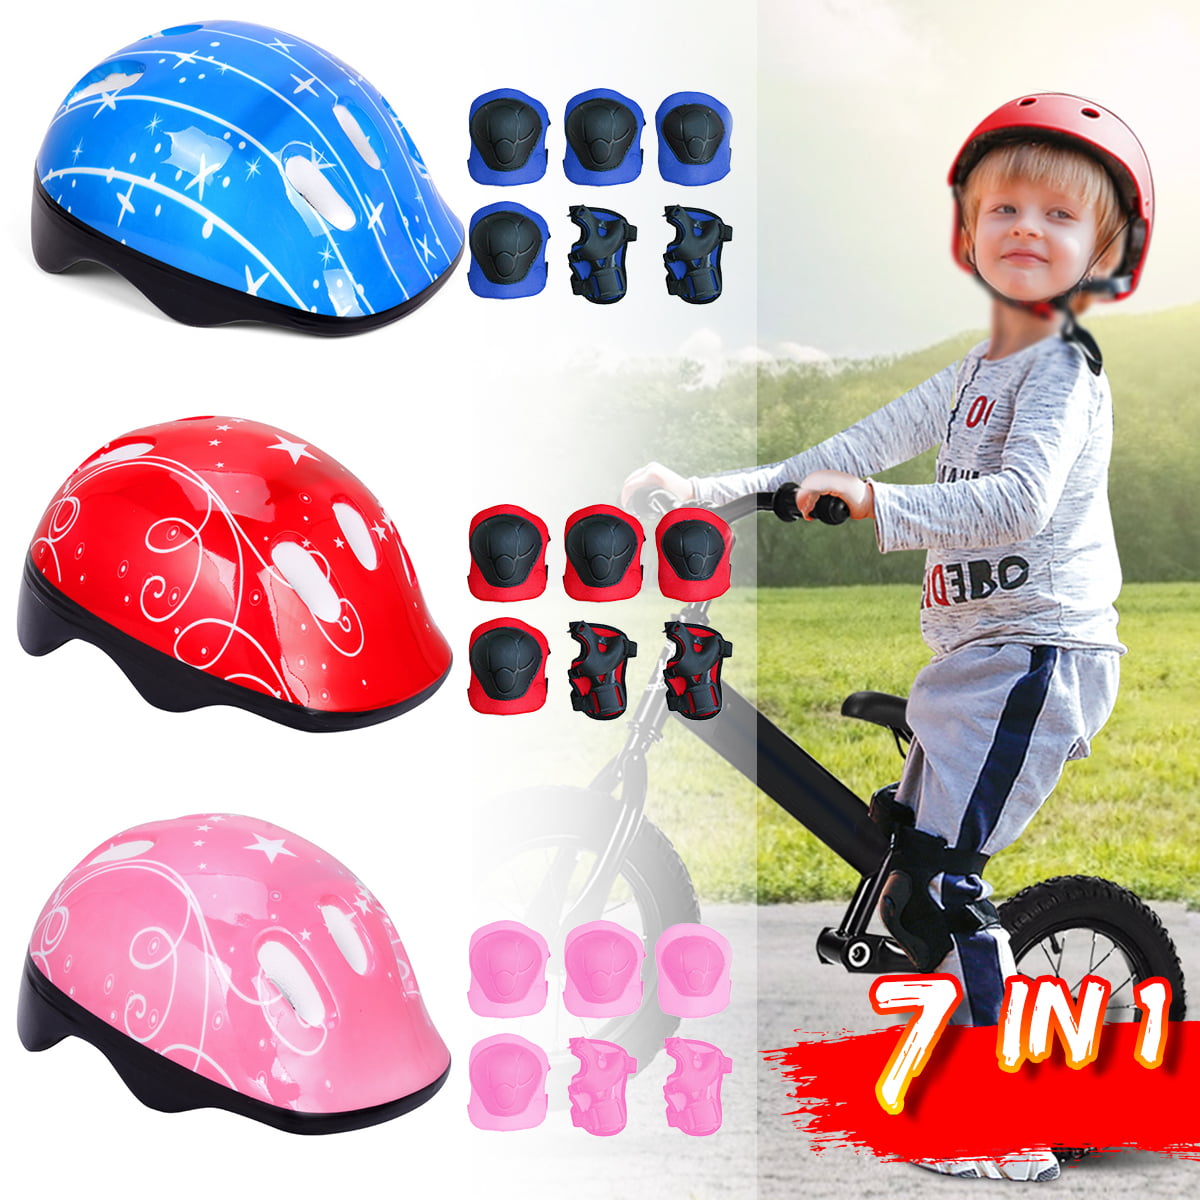 bike helmet 7 year old